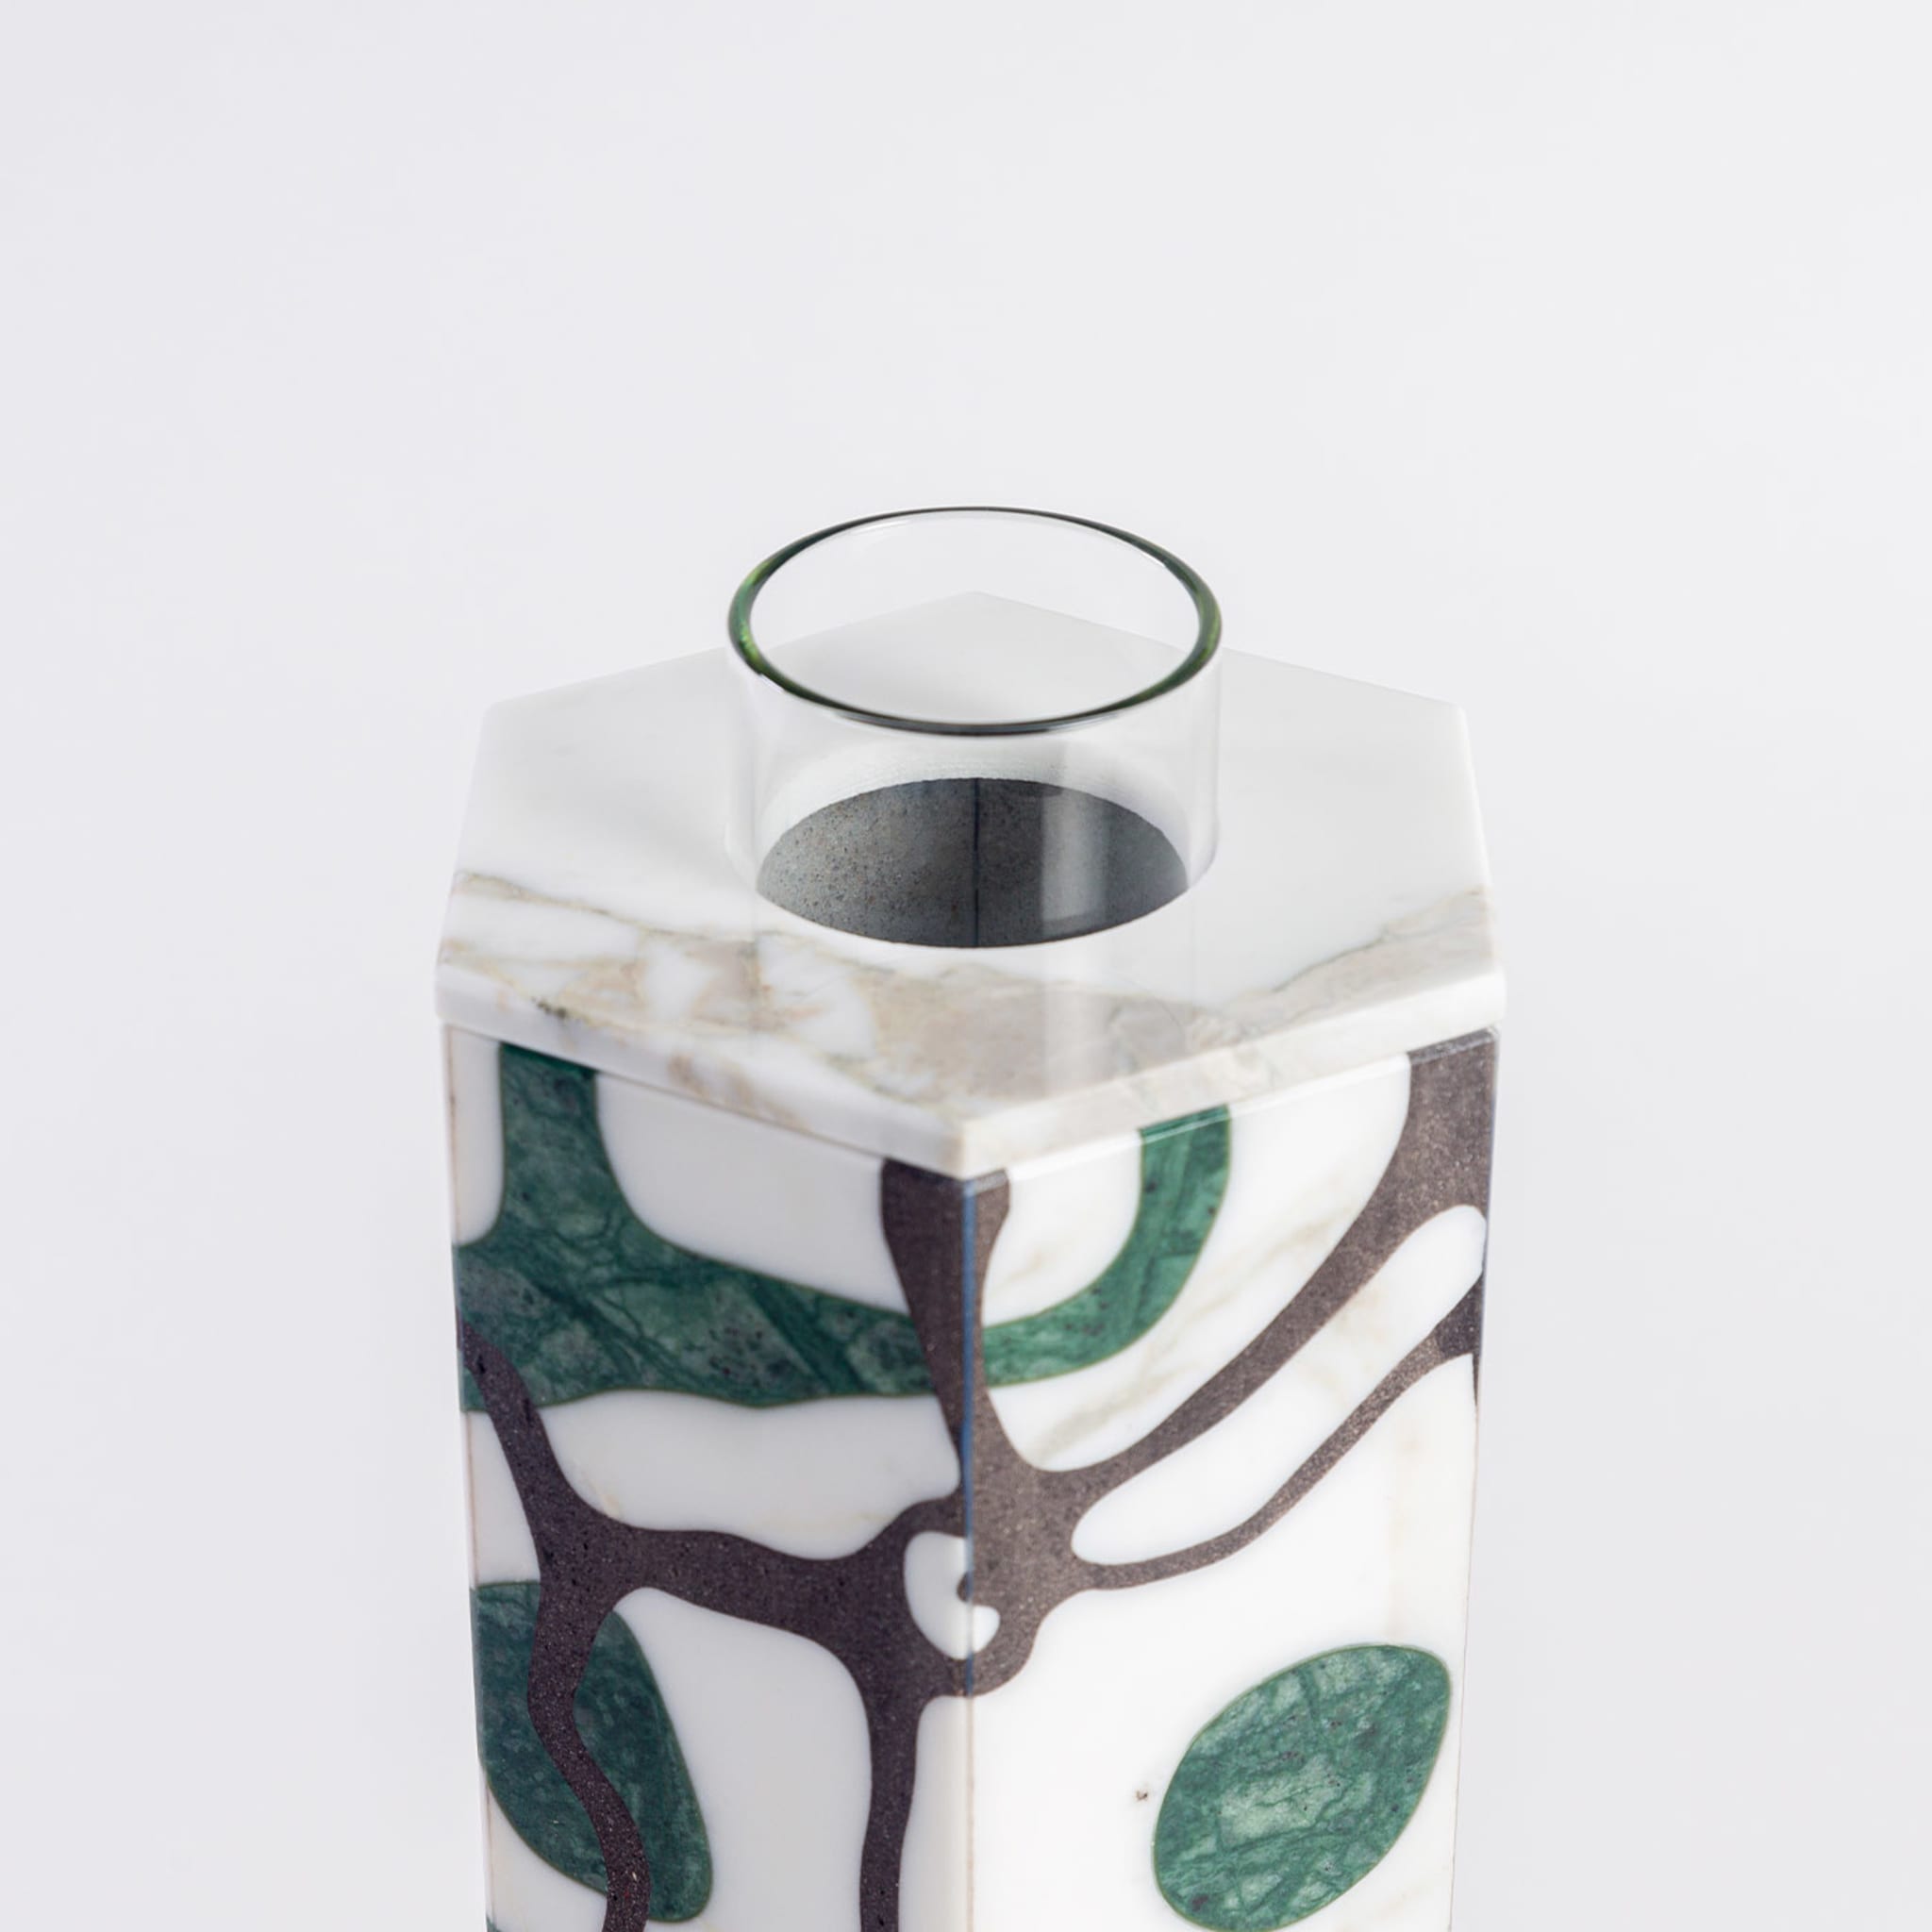 Hexagonal Green Guatemala & Calacatta Vase by Zanellato&Bortotto - Alternative view 1